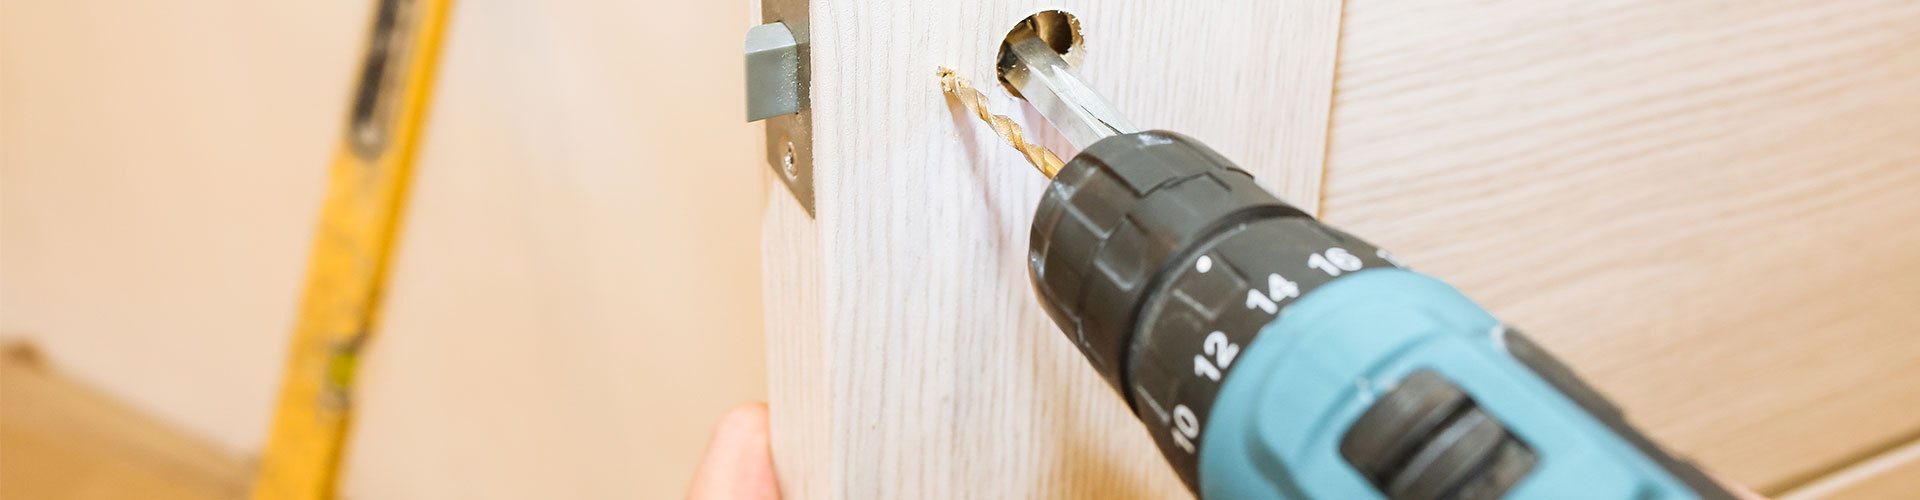 Errores más frecuentes al instalar una puerta acorazada y cómo evitarlos